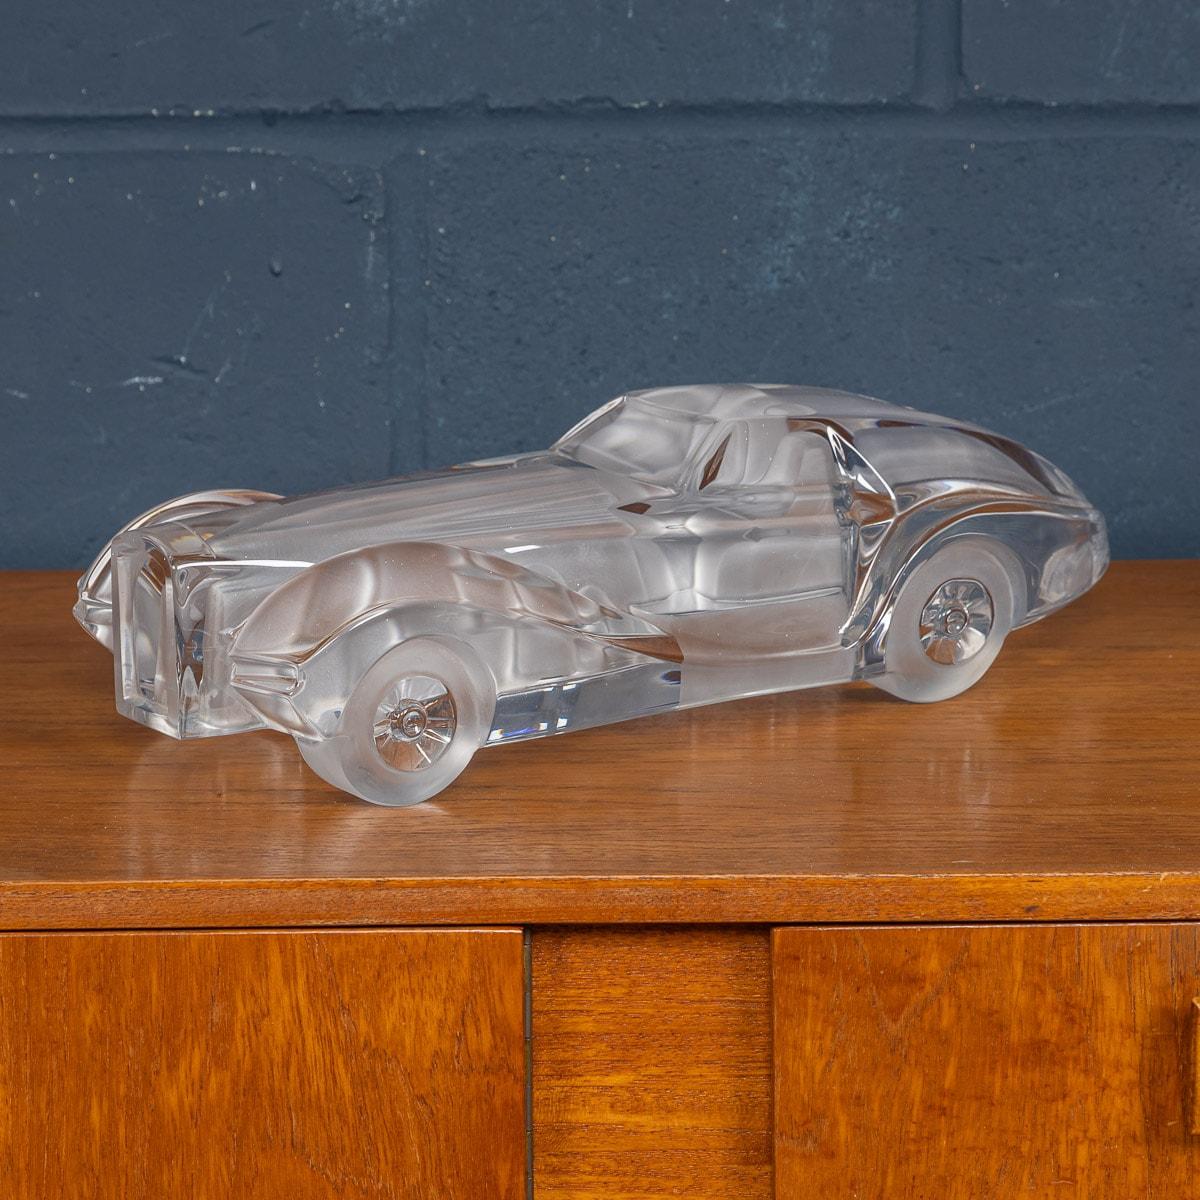 Rare modèle de voiture de course conçu par Xavier Froissart et réalisé par Daum, France, vers 1985. Un mélange de verre dépoli et poli donne une texture merveilleuse à cette sculpture, rappelant les lignes d'une voiture de course monoplace du Mans